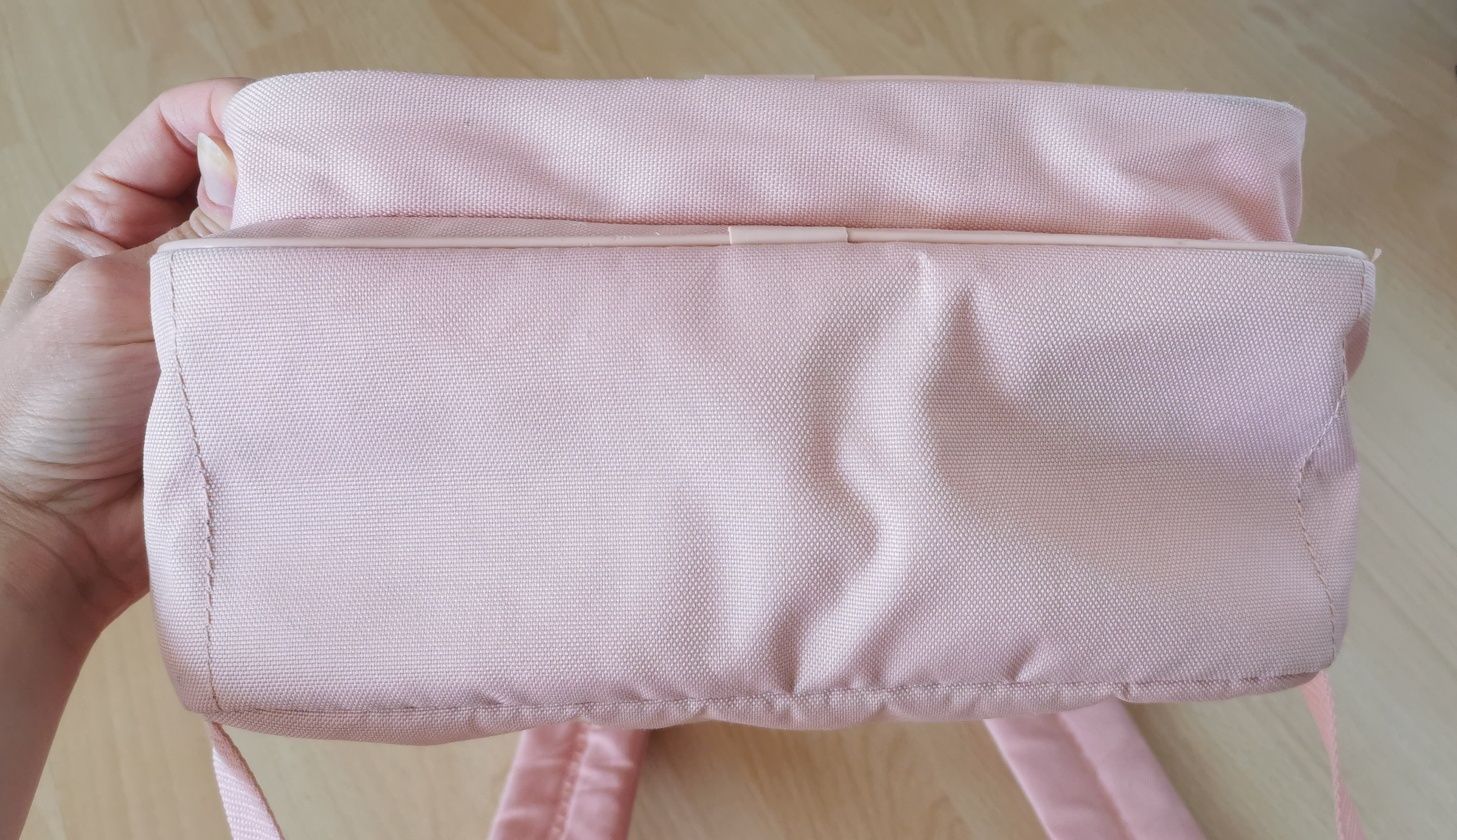 Plecak Adidas Originals Trefoil 25 L różowy pudroworóżowy